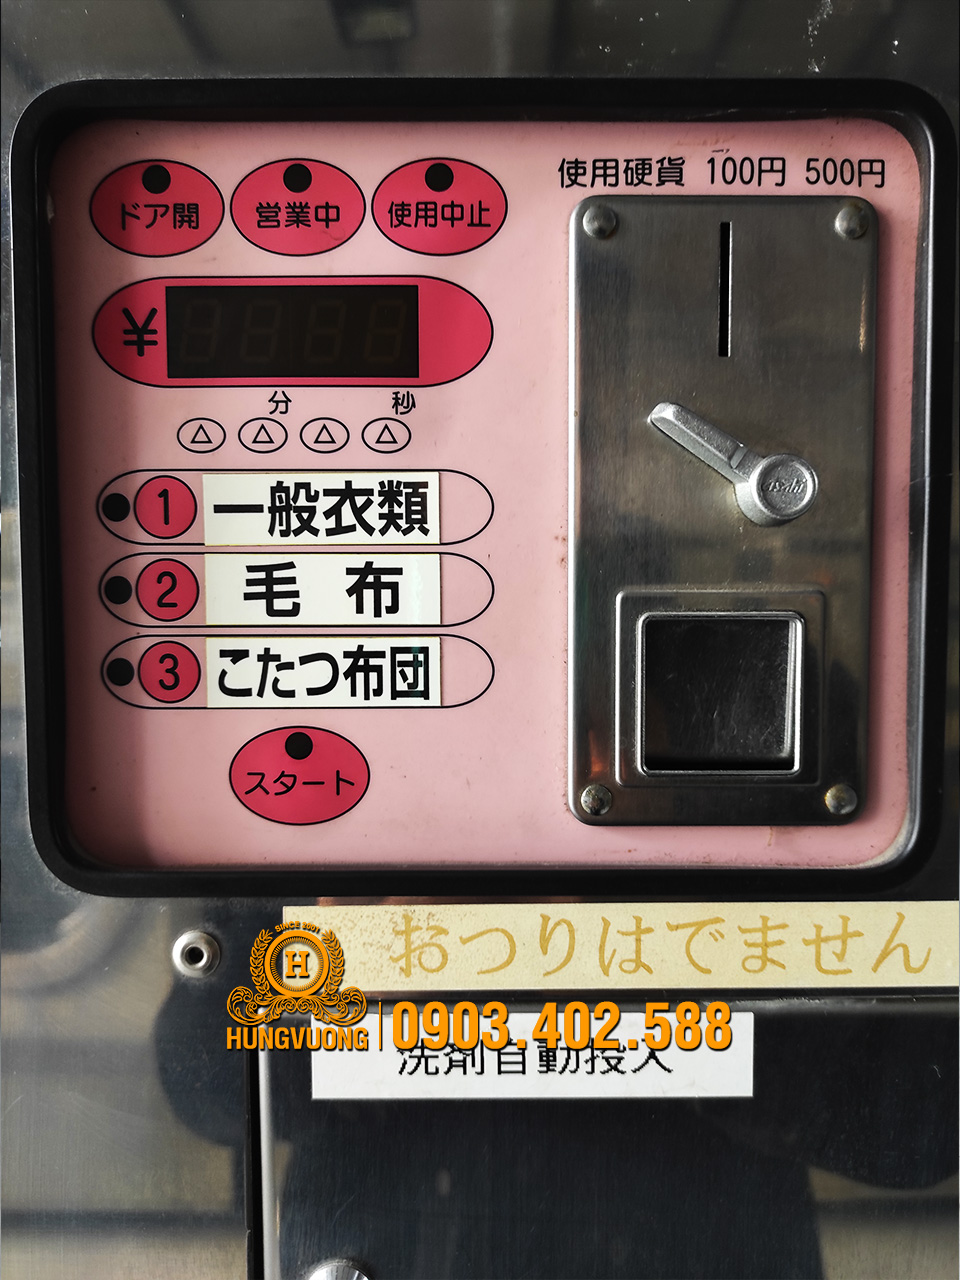 Bảng điều khiển máy giặt công nghiệp YAMAMOTO WN16CL, 16kg, chân cố định, biến tần, Nhật